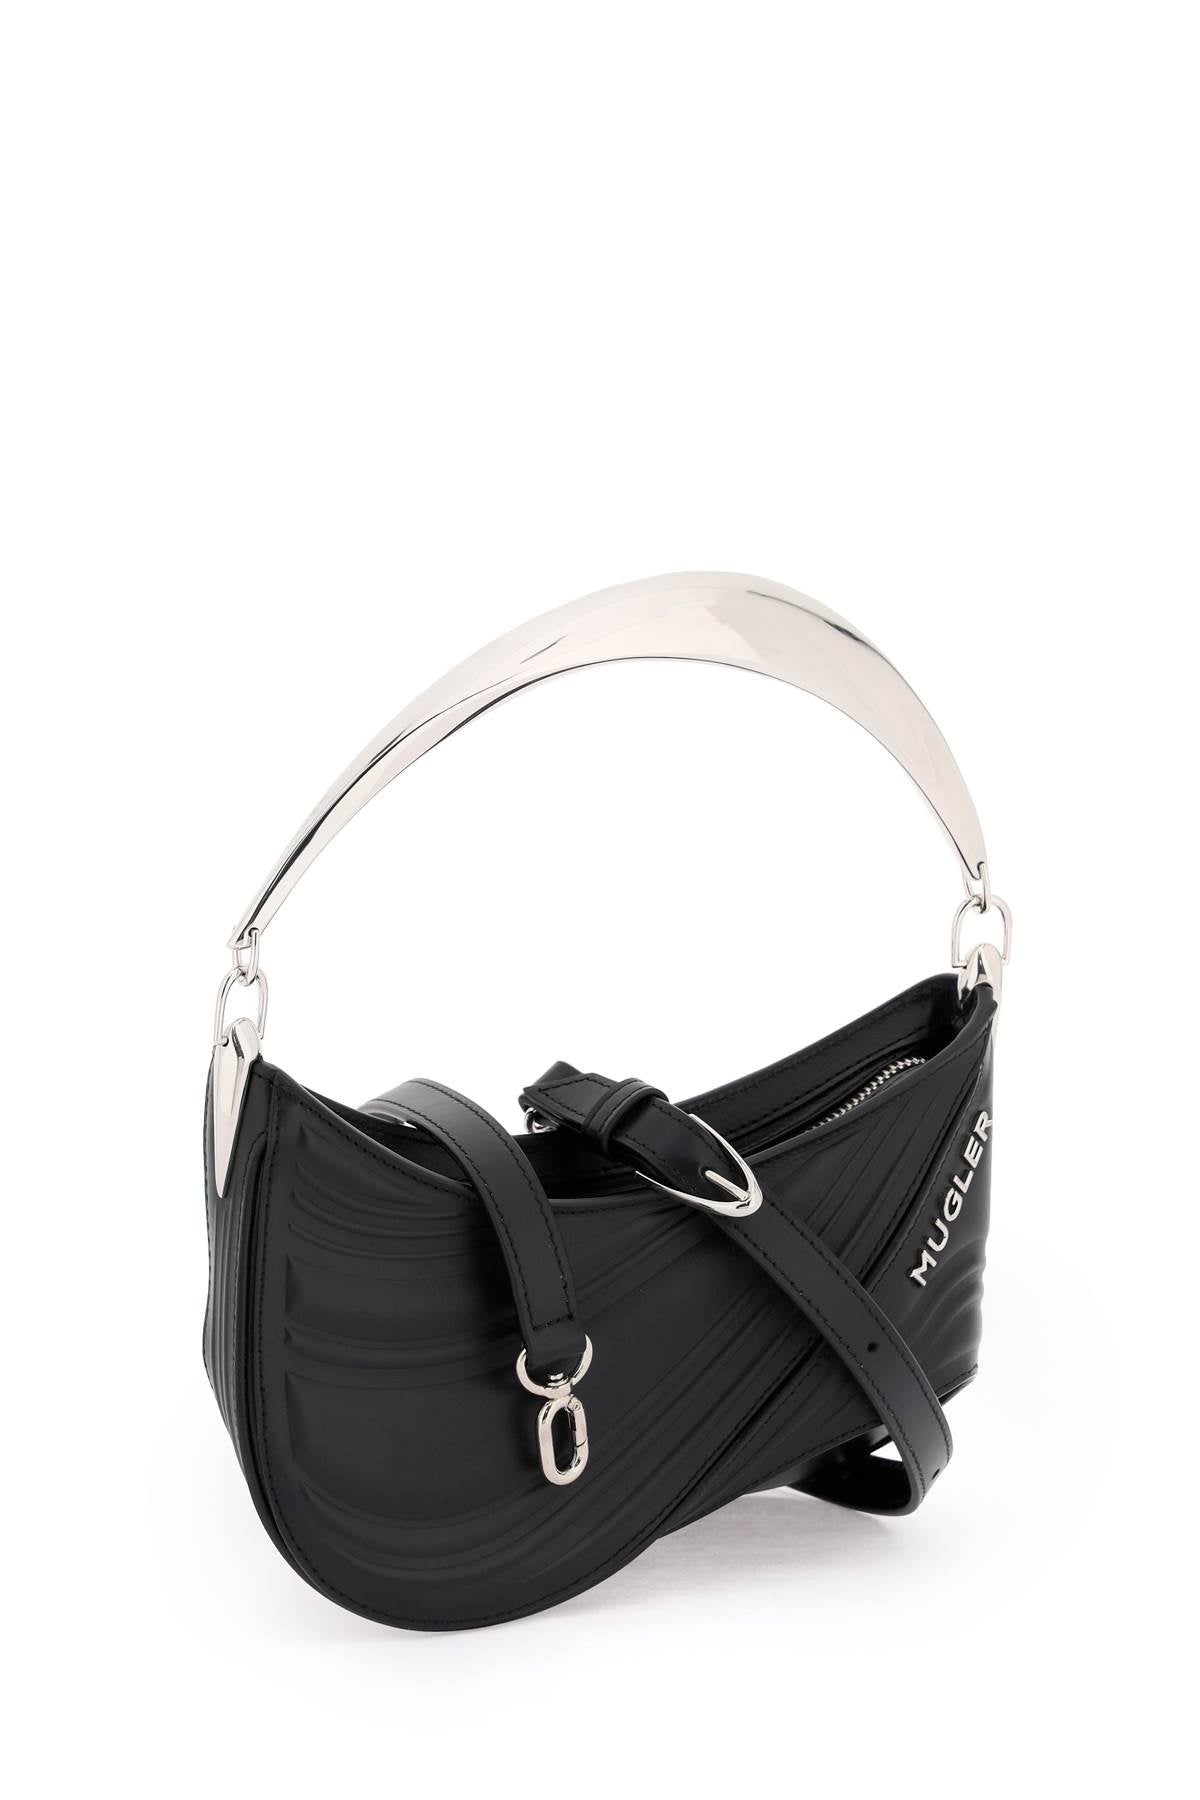 MUGLER Spiral Curve Leather Handbag for Women